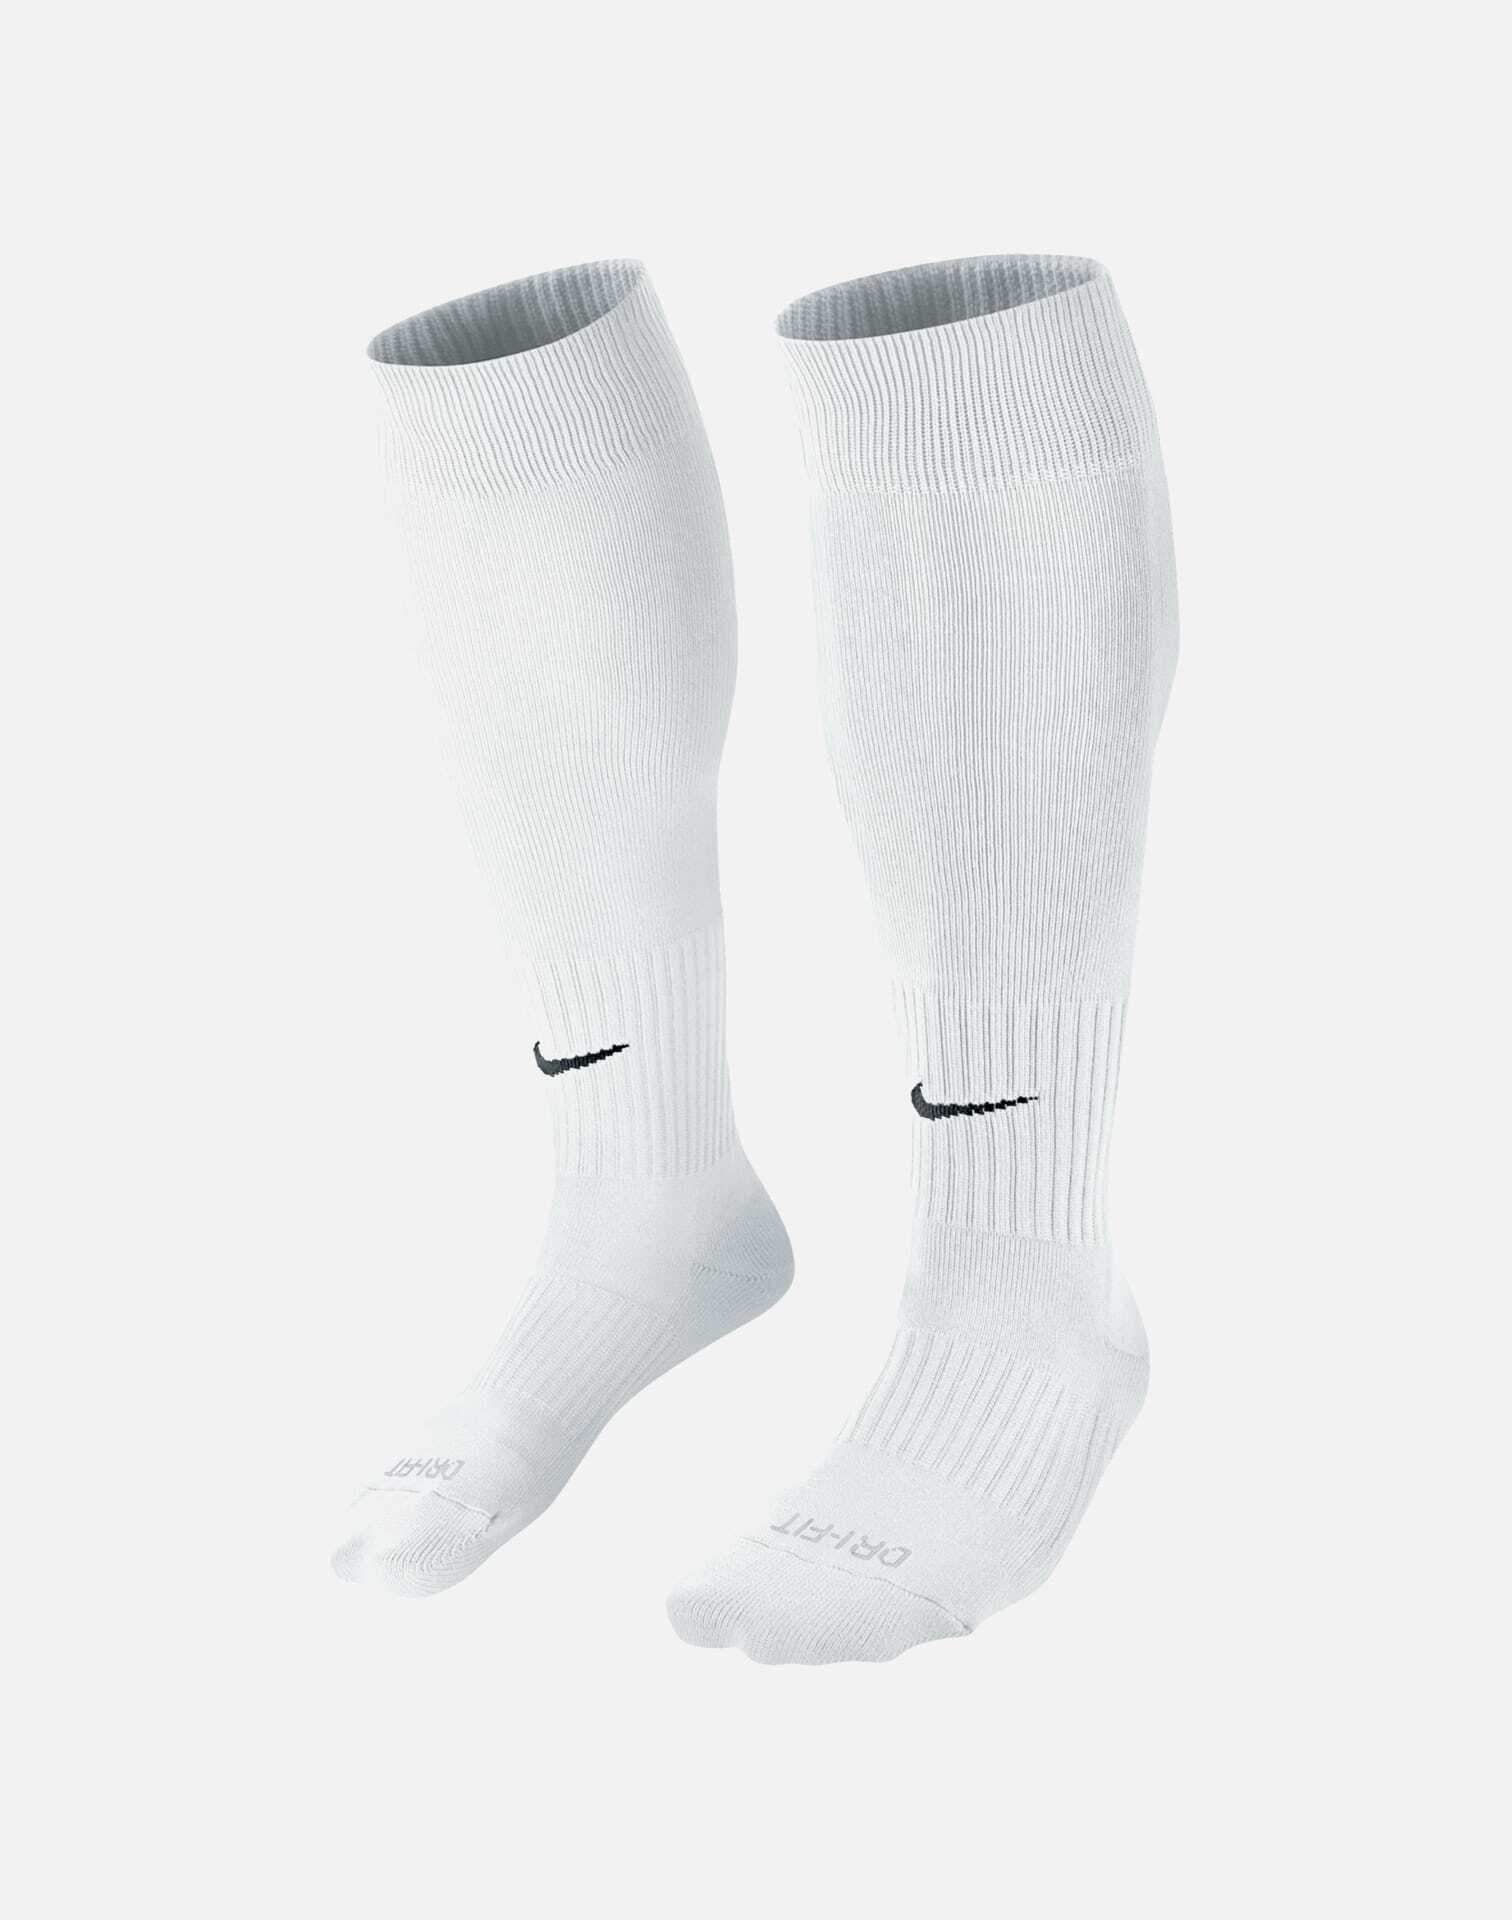 classic nike socks